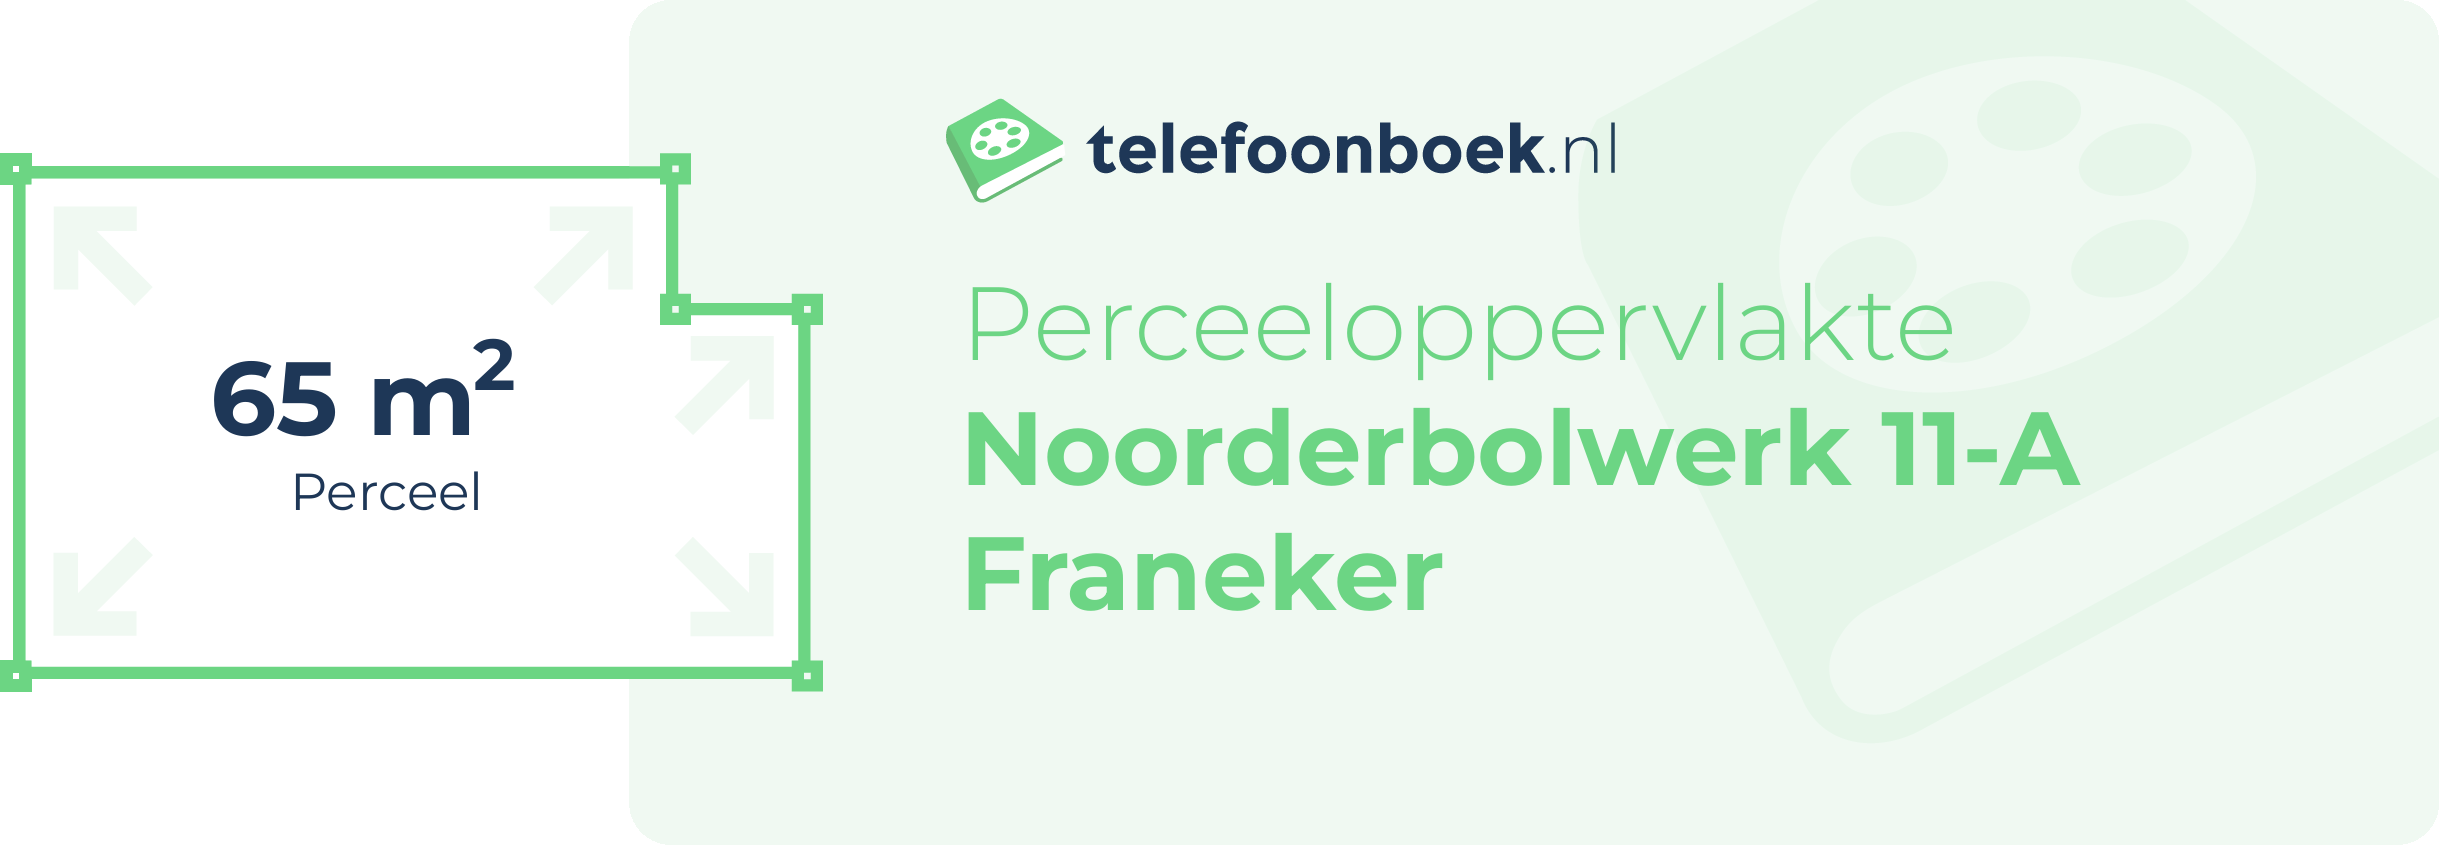 Perceeloppervlakte Noorderbolwerk 11-A Franeker